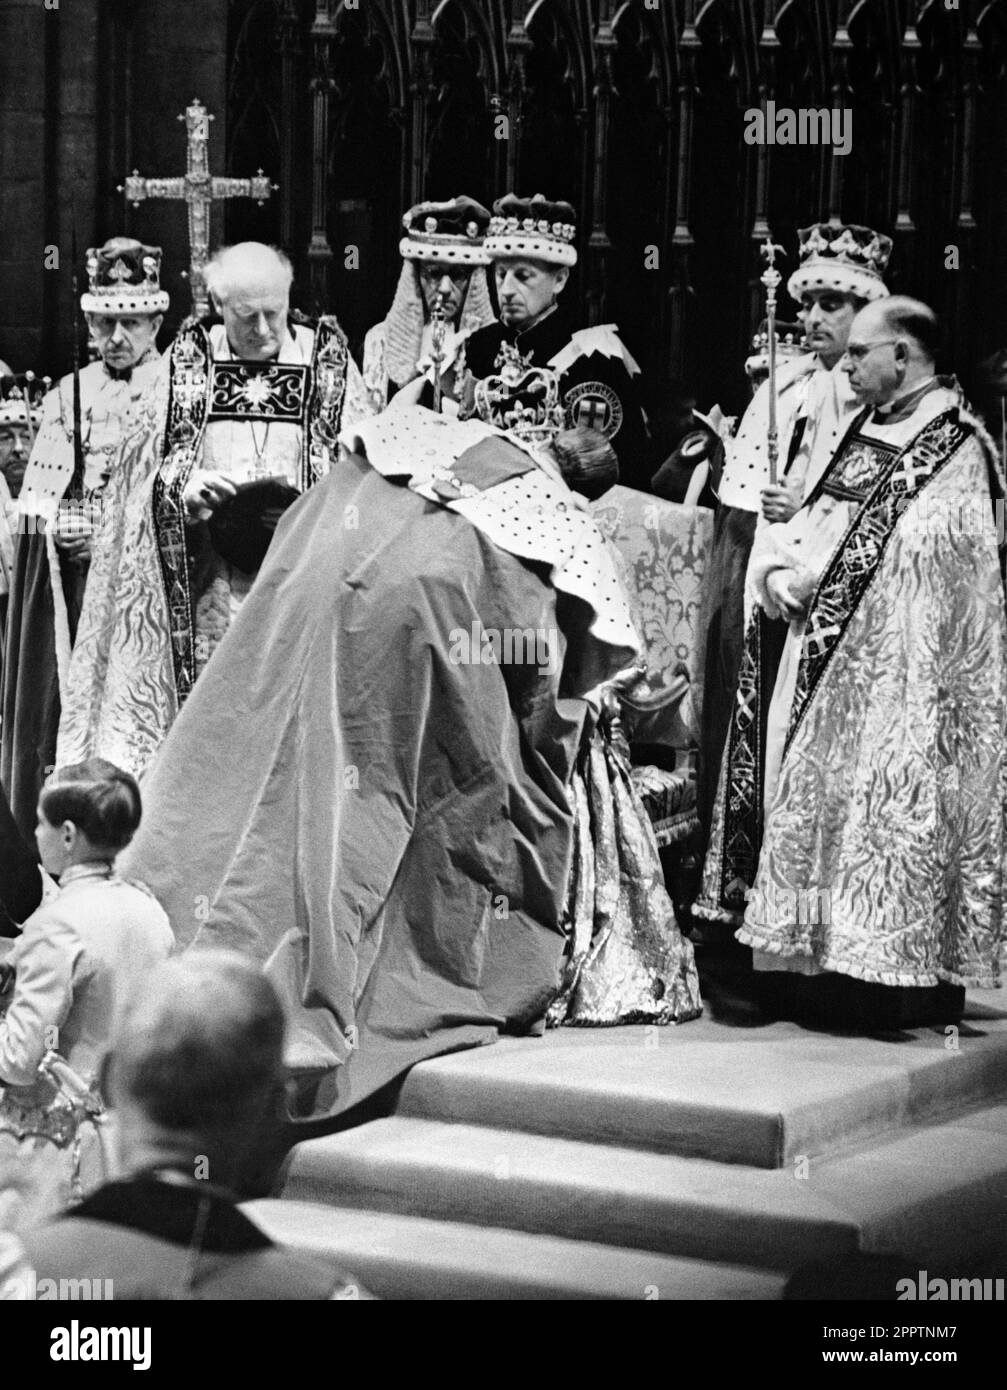 Photo du dossier datée du 02/06/53 du duc d'Édimbourg rendant hommage à la reine Elizabeth II lors de son couronnement à l'abbaye de Westminster. Le couronnement de 1953 a été un coup de pouce au moral dans les années difficiles d'après-guerre, alors que des millions de personnes ont célébré la journée historique. Elizabeth II a été couronnée lors d'une cérémonie profondément religieuse à l'abbaye de Westminster sur 2 juin 1953. Date de publication : mardi 25 avril 2023. Banque D'Images